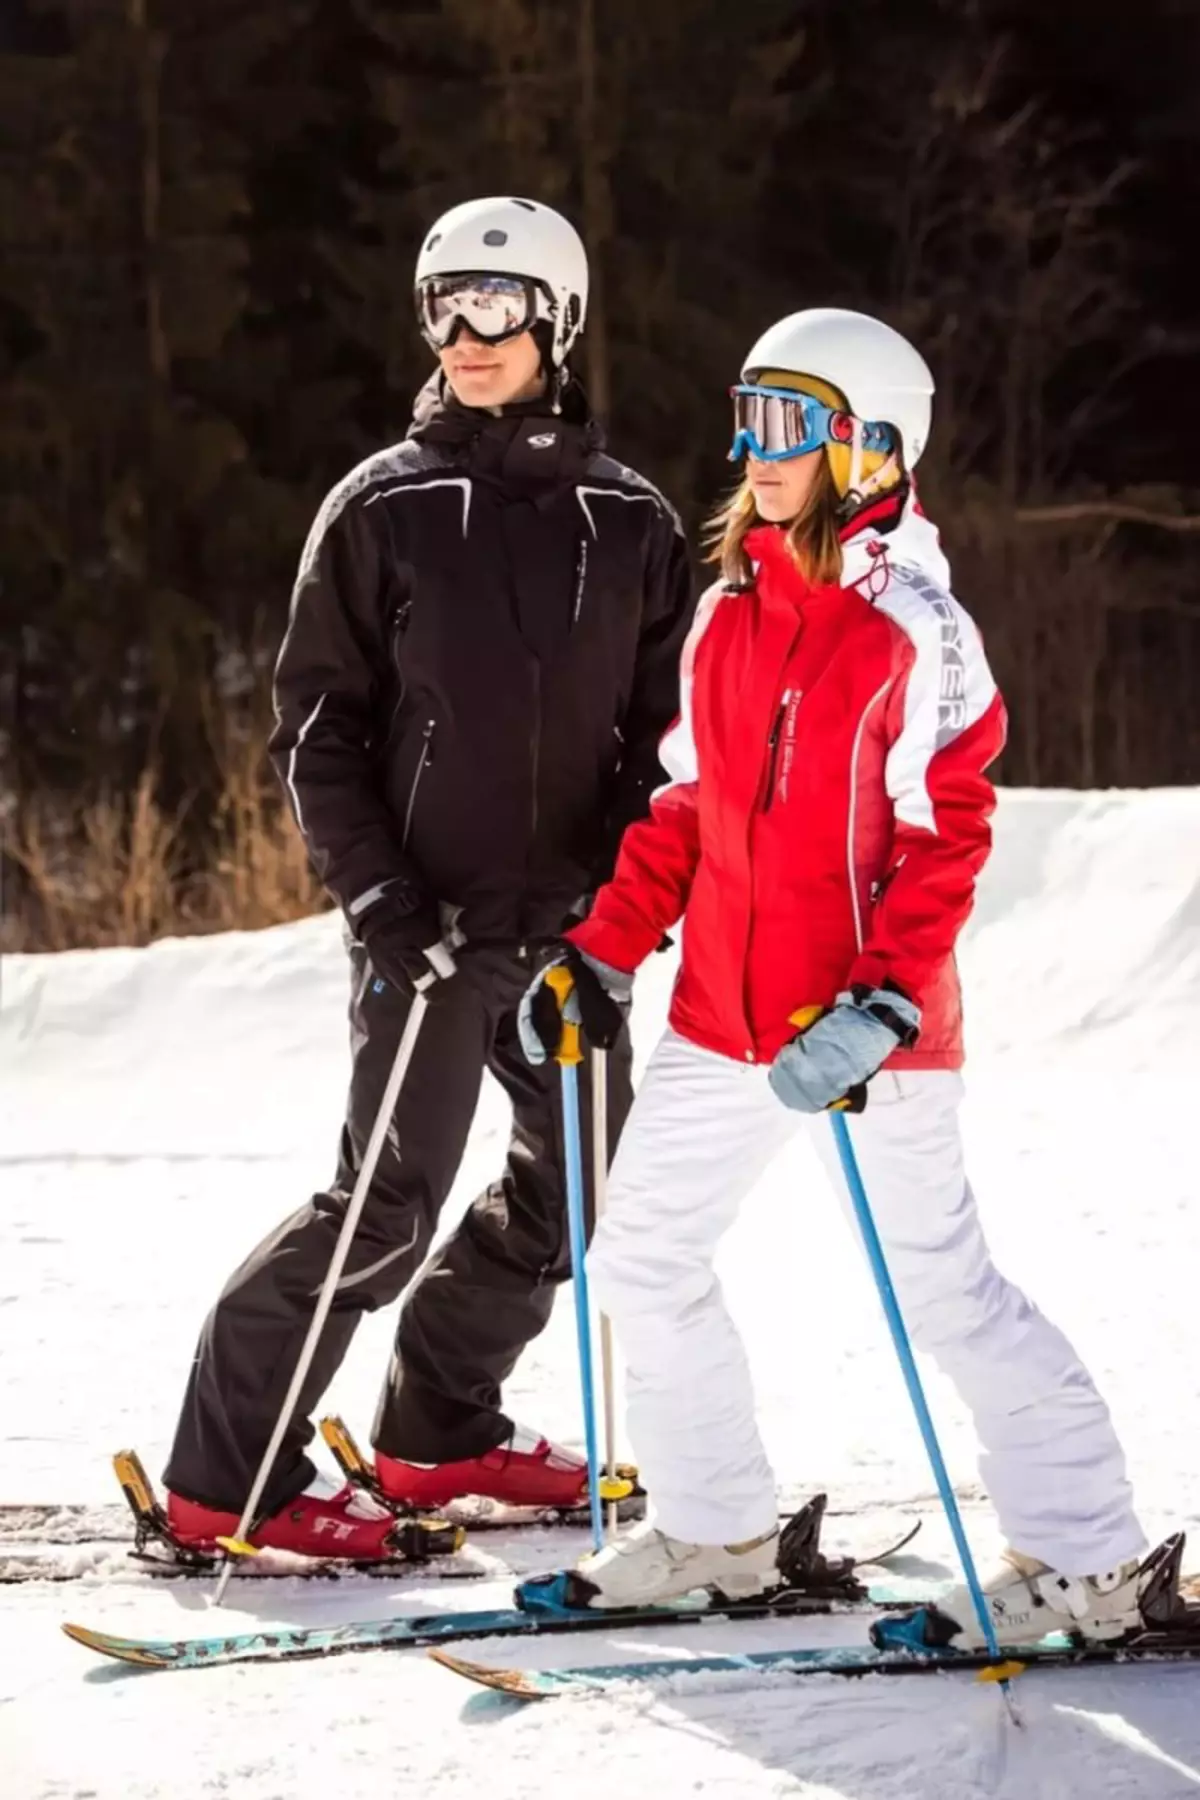 Skihandsker (61 billeder): Kvinders ski modeller til sport, oversigt over populære mærker - Reysshe, Head, Salomon, Leki 15203_41